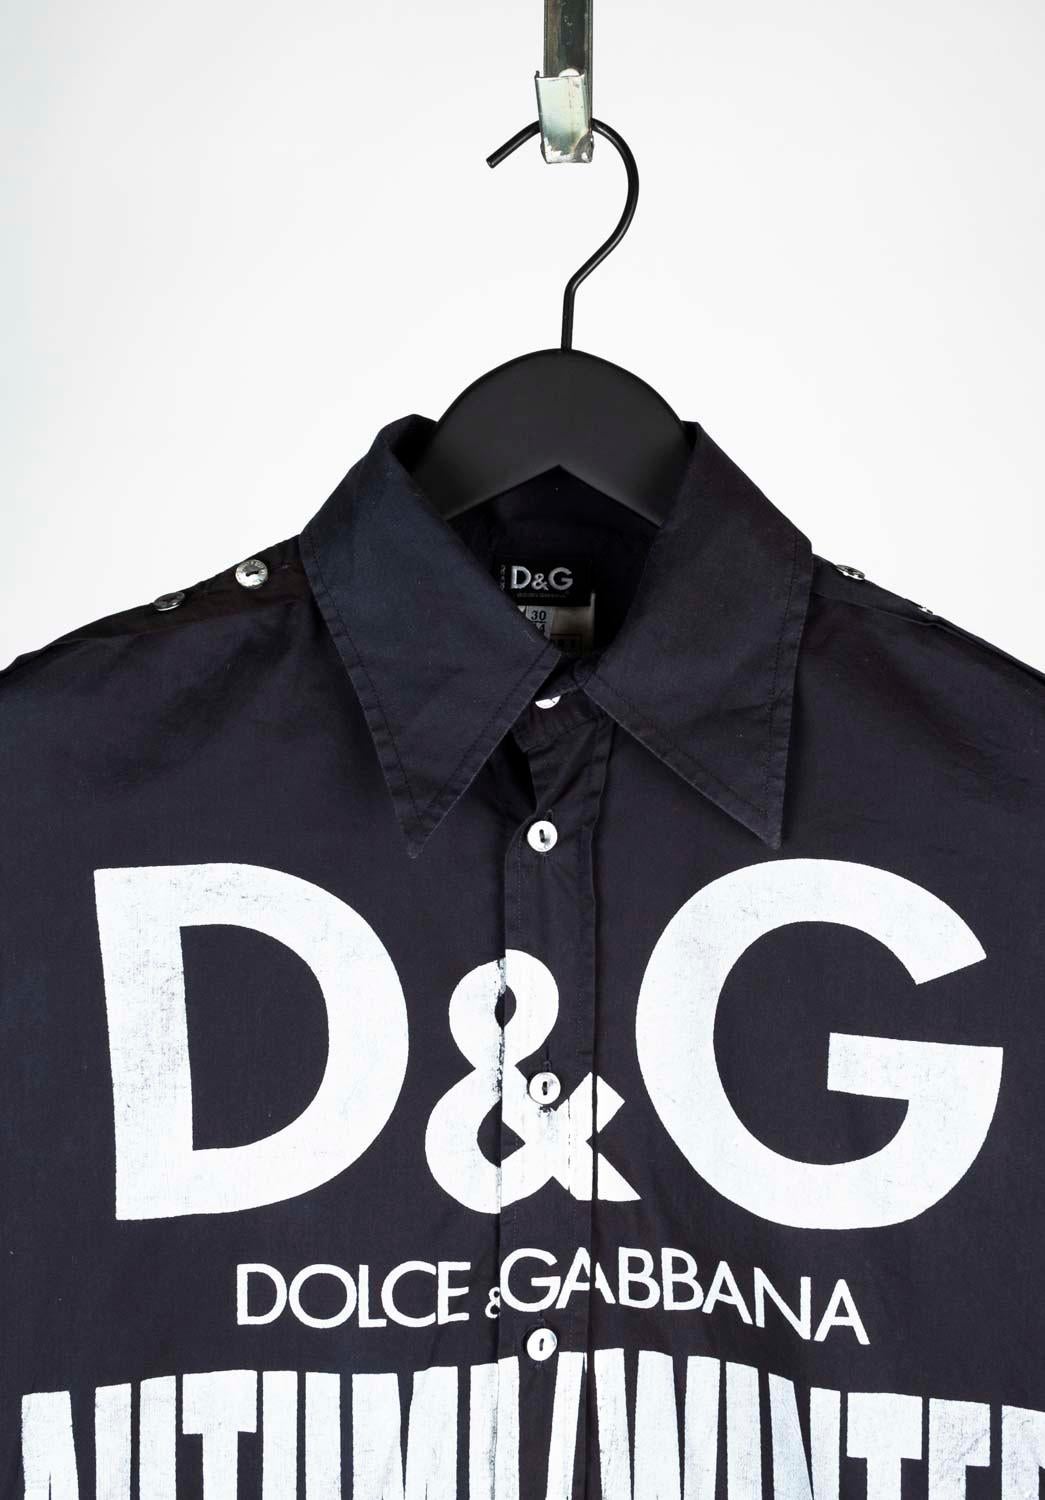 100% echtes Vintage Dolce&Gabbana Männer Runway Shirt 
Farbe: dunkelblau
(Eine tatsächliche Farbe kann ein wenig variieren aufgrund individueller Computer-Bildschirm Interpretation)
MATERIAL: 68% Baumwolle, 32% Polyamid
Etikettengröße: 30/44